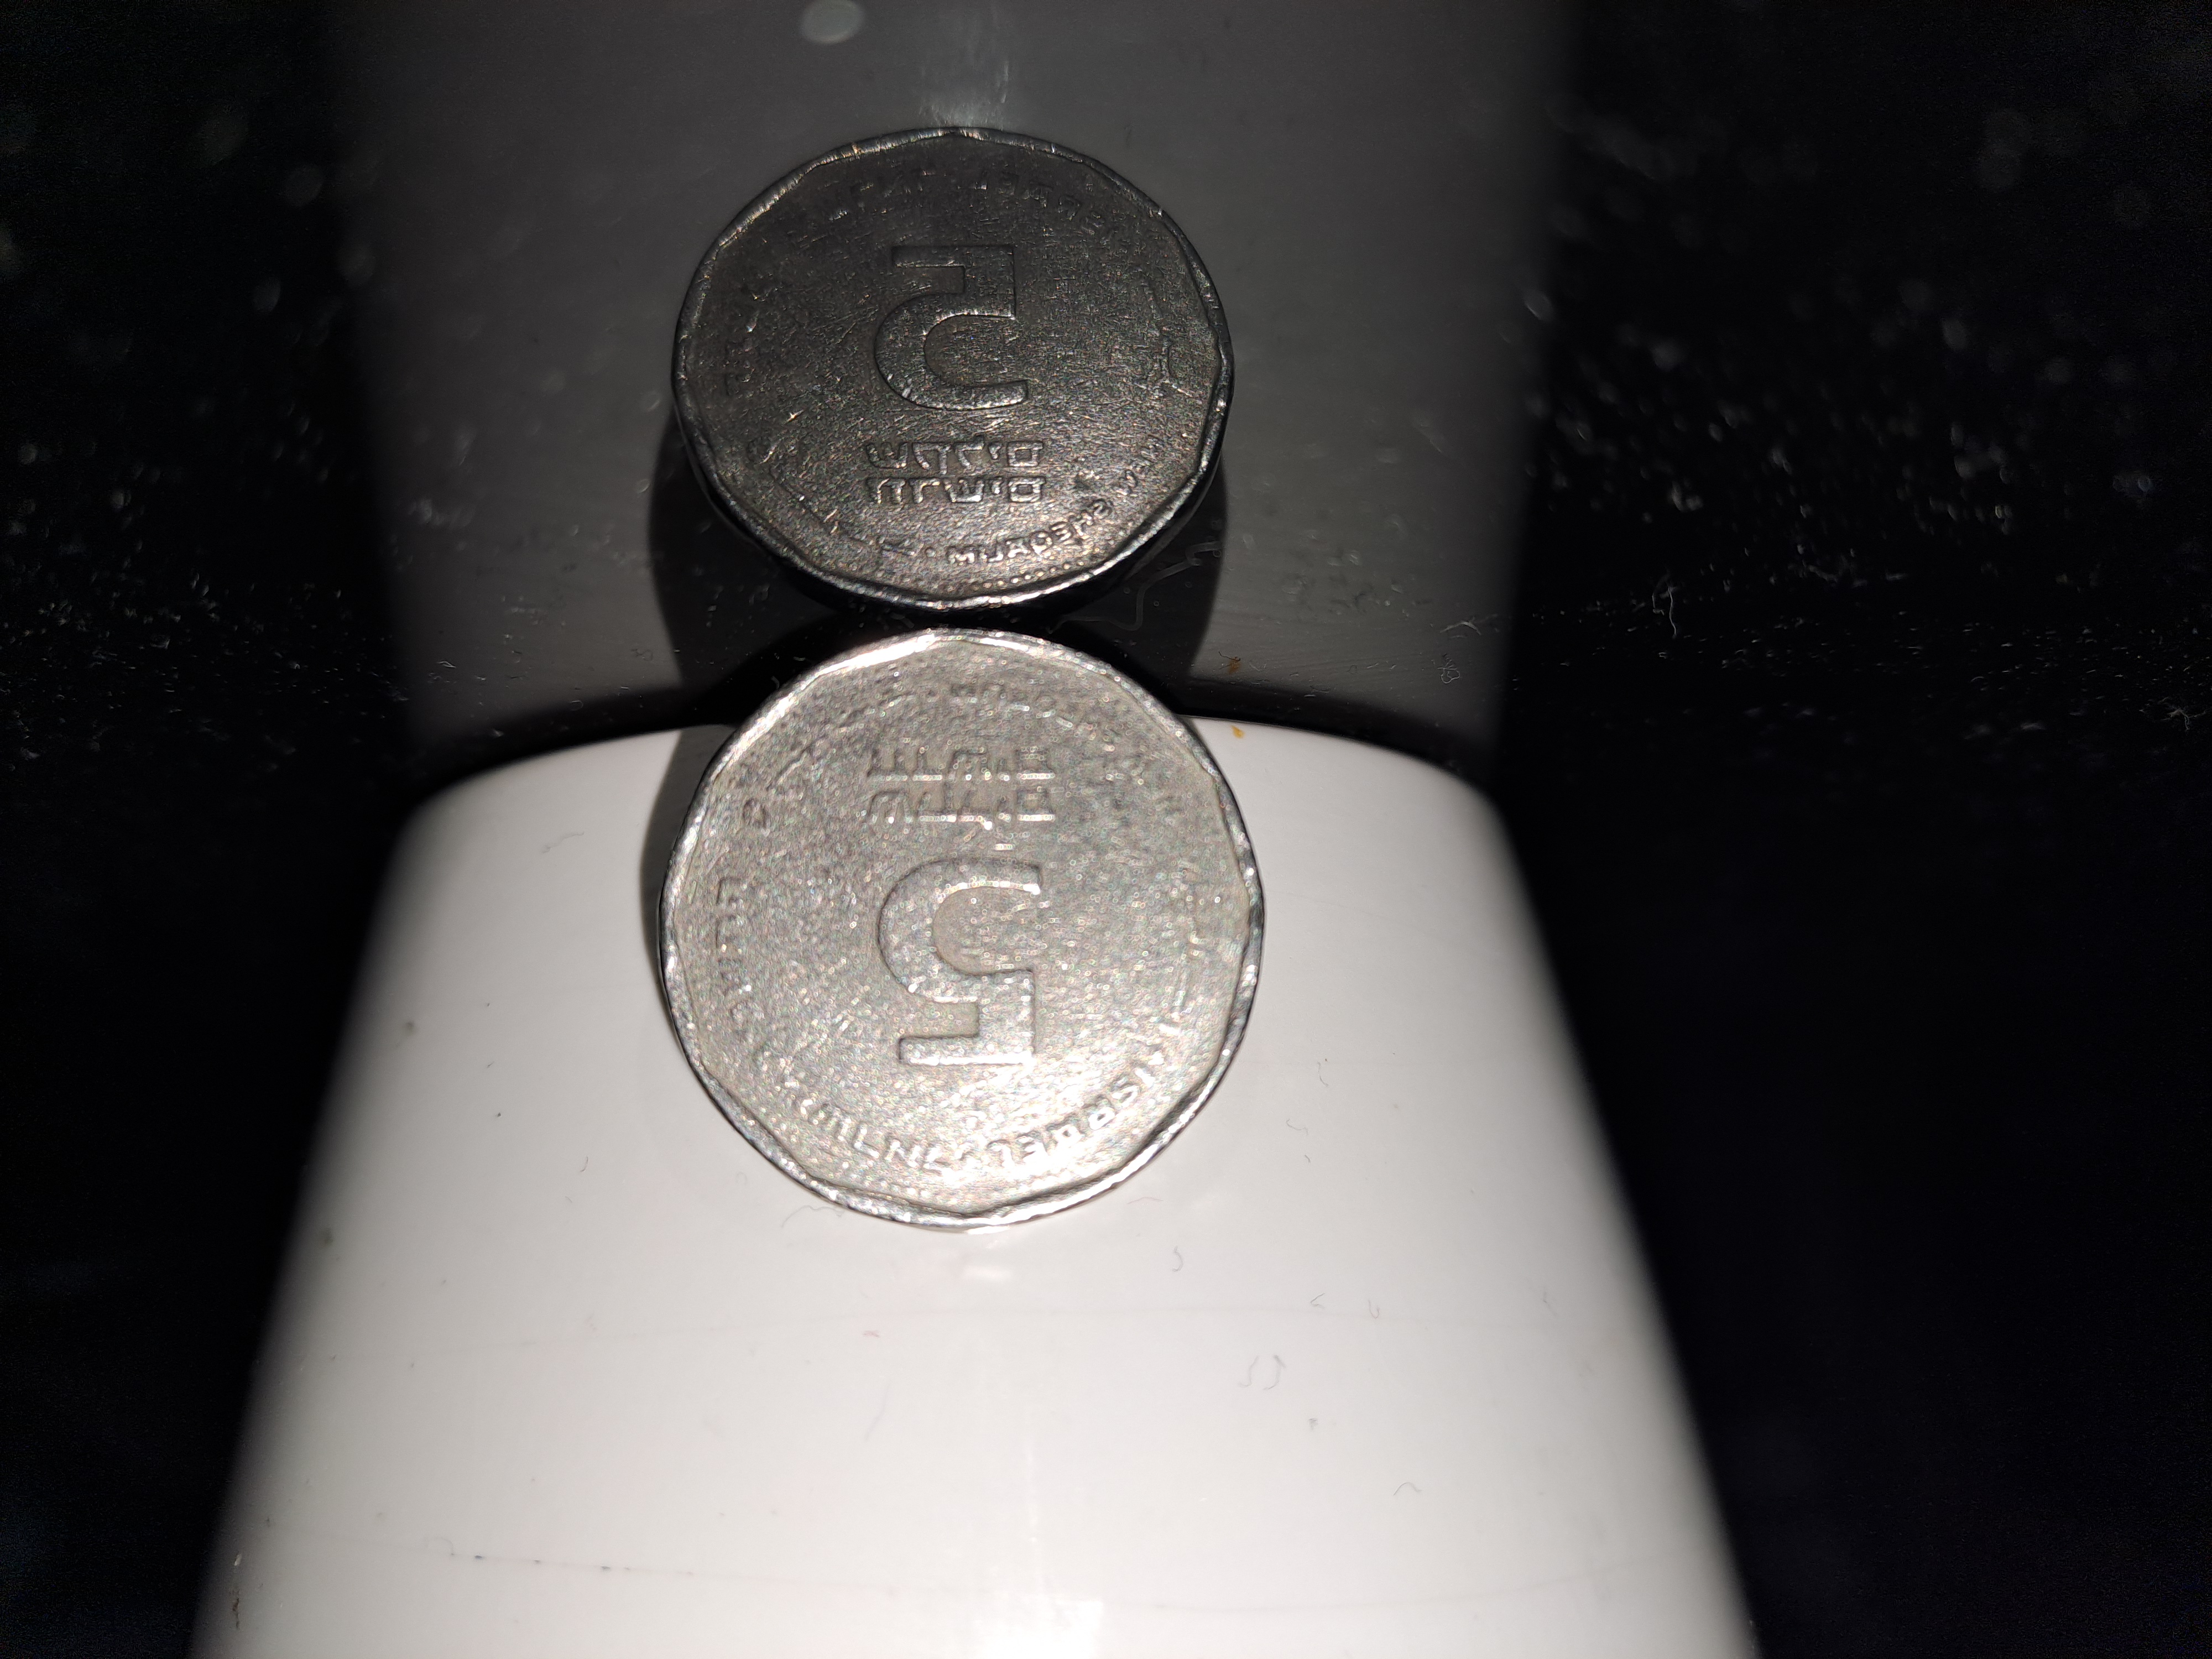 תמונה 2 ,מטבע חמישה שקלים חיים ויצמן למכירה במעלה אדומים אספנות  מטבעות ושטרות